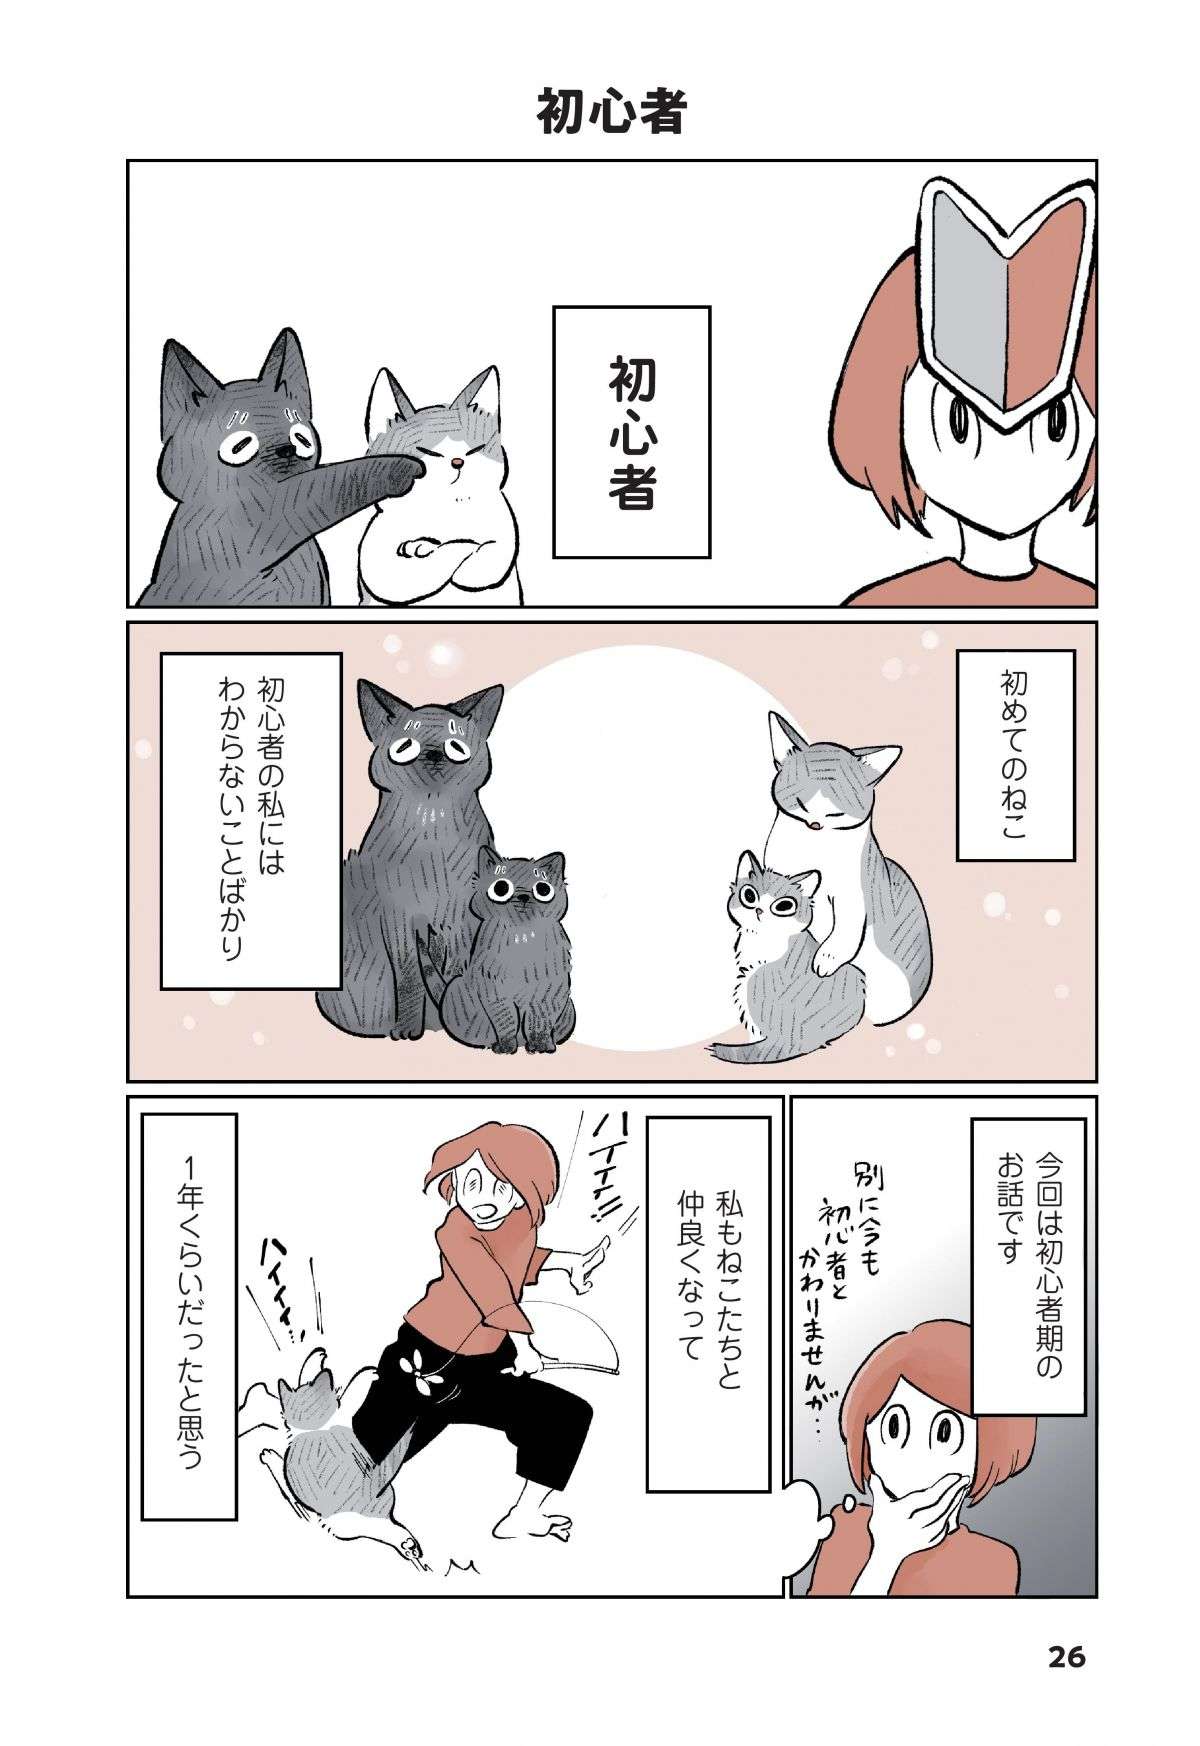 「なんか吐いた！」猫飼い初心者が焦って病院に駆け込むと、先生は「意外な反応」で...／こねこのドレイ koneko_dorei3-1.jpg